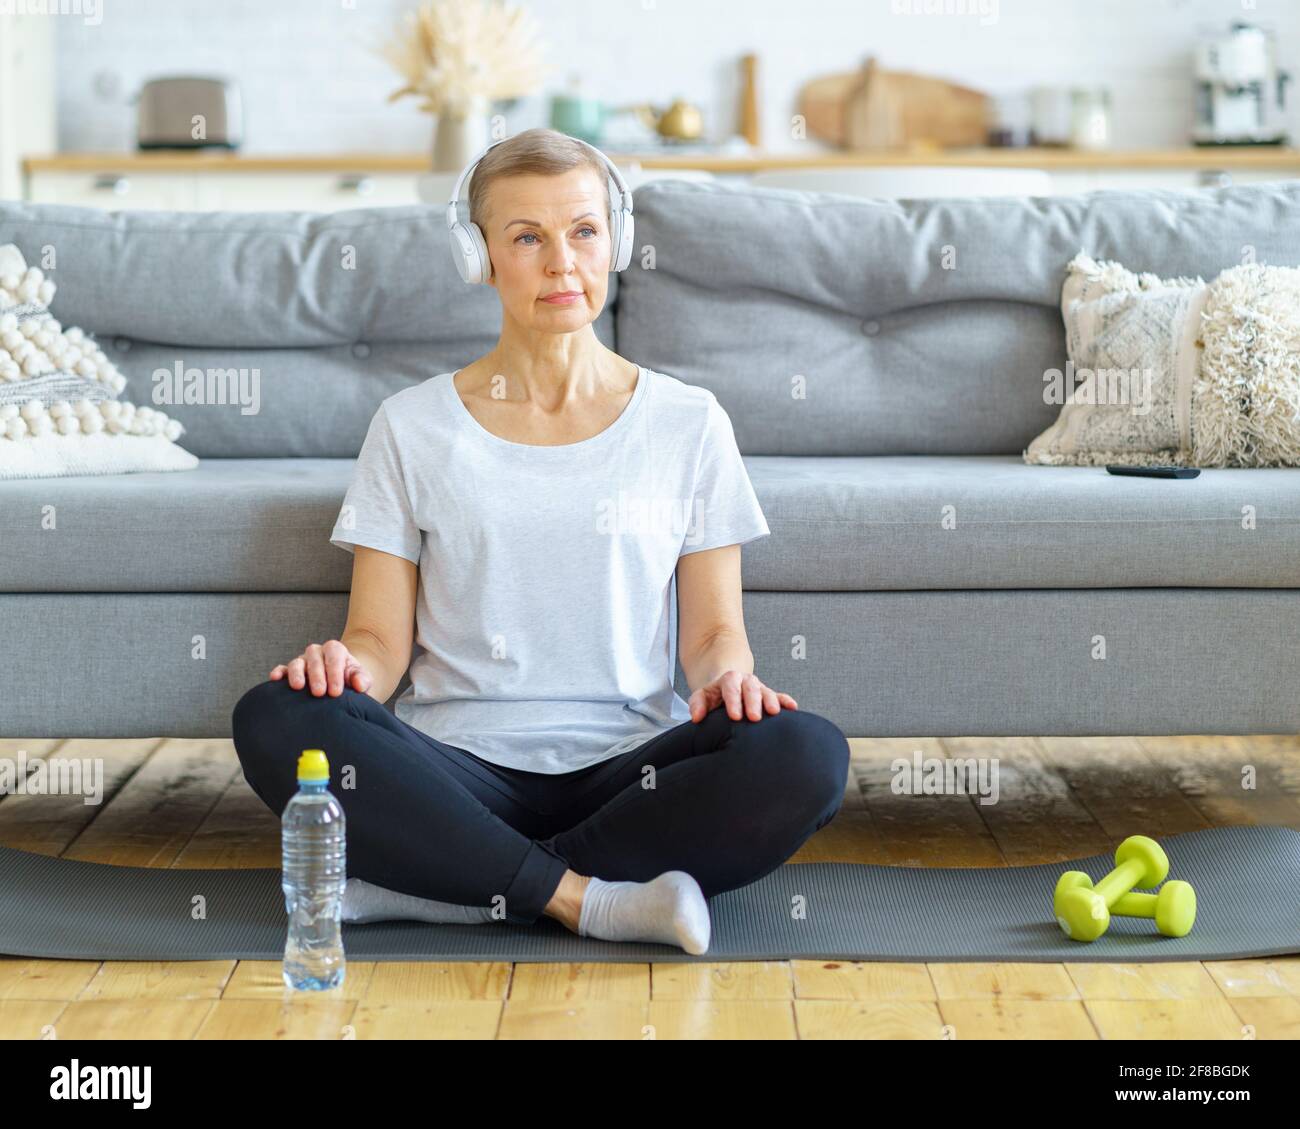 Ältere Frau sitzt mit gekreuzten Beinen in Kopfhörern und hört im Wohnzimmer Musik. Entspannen Sie sich nach dem Fitnesstraining. Emotionale und spirituelle Gesundheit. Wohlbefinden, Wellness mit Meditation. Genießen Sie schöne Momente Stockfoto